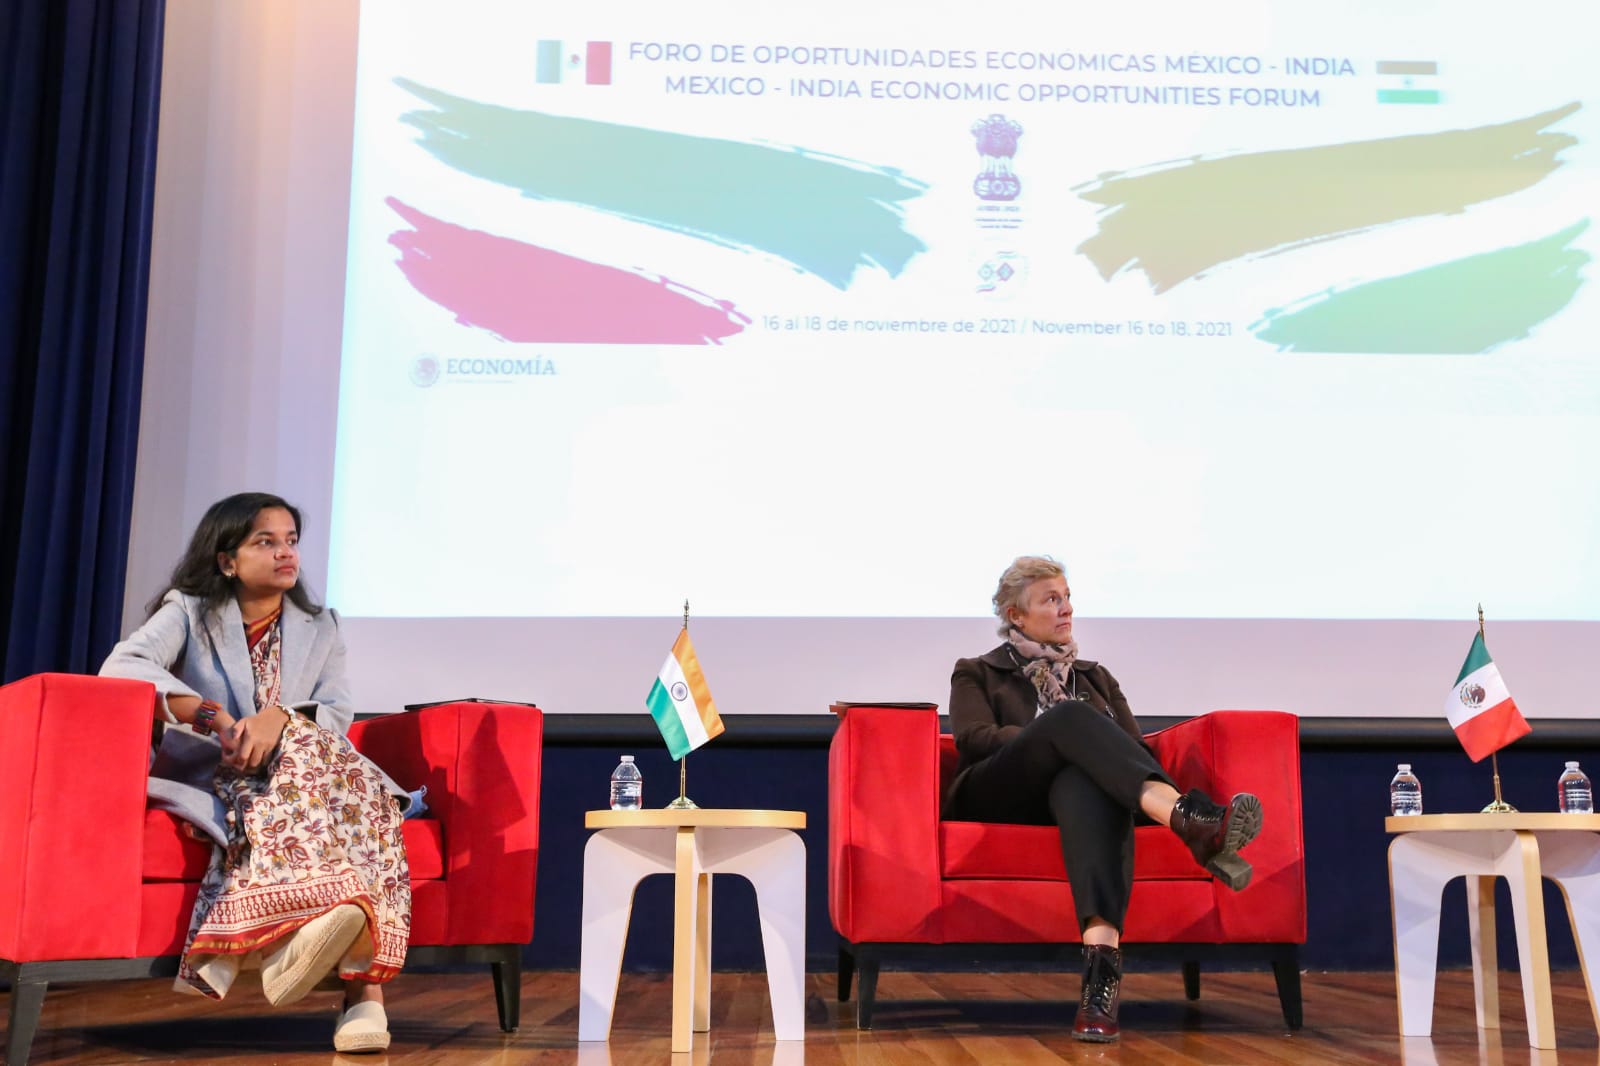 Foro de oportunidades económicas México – India